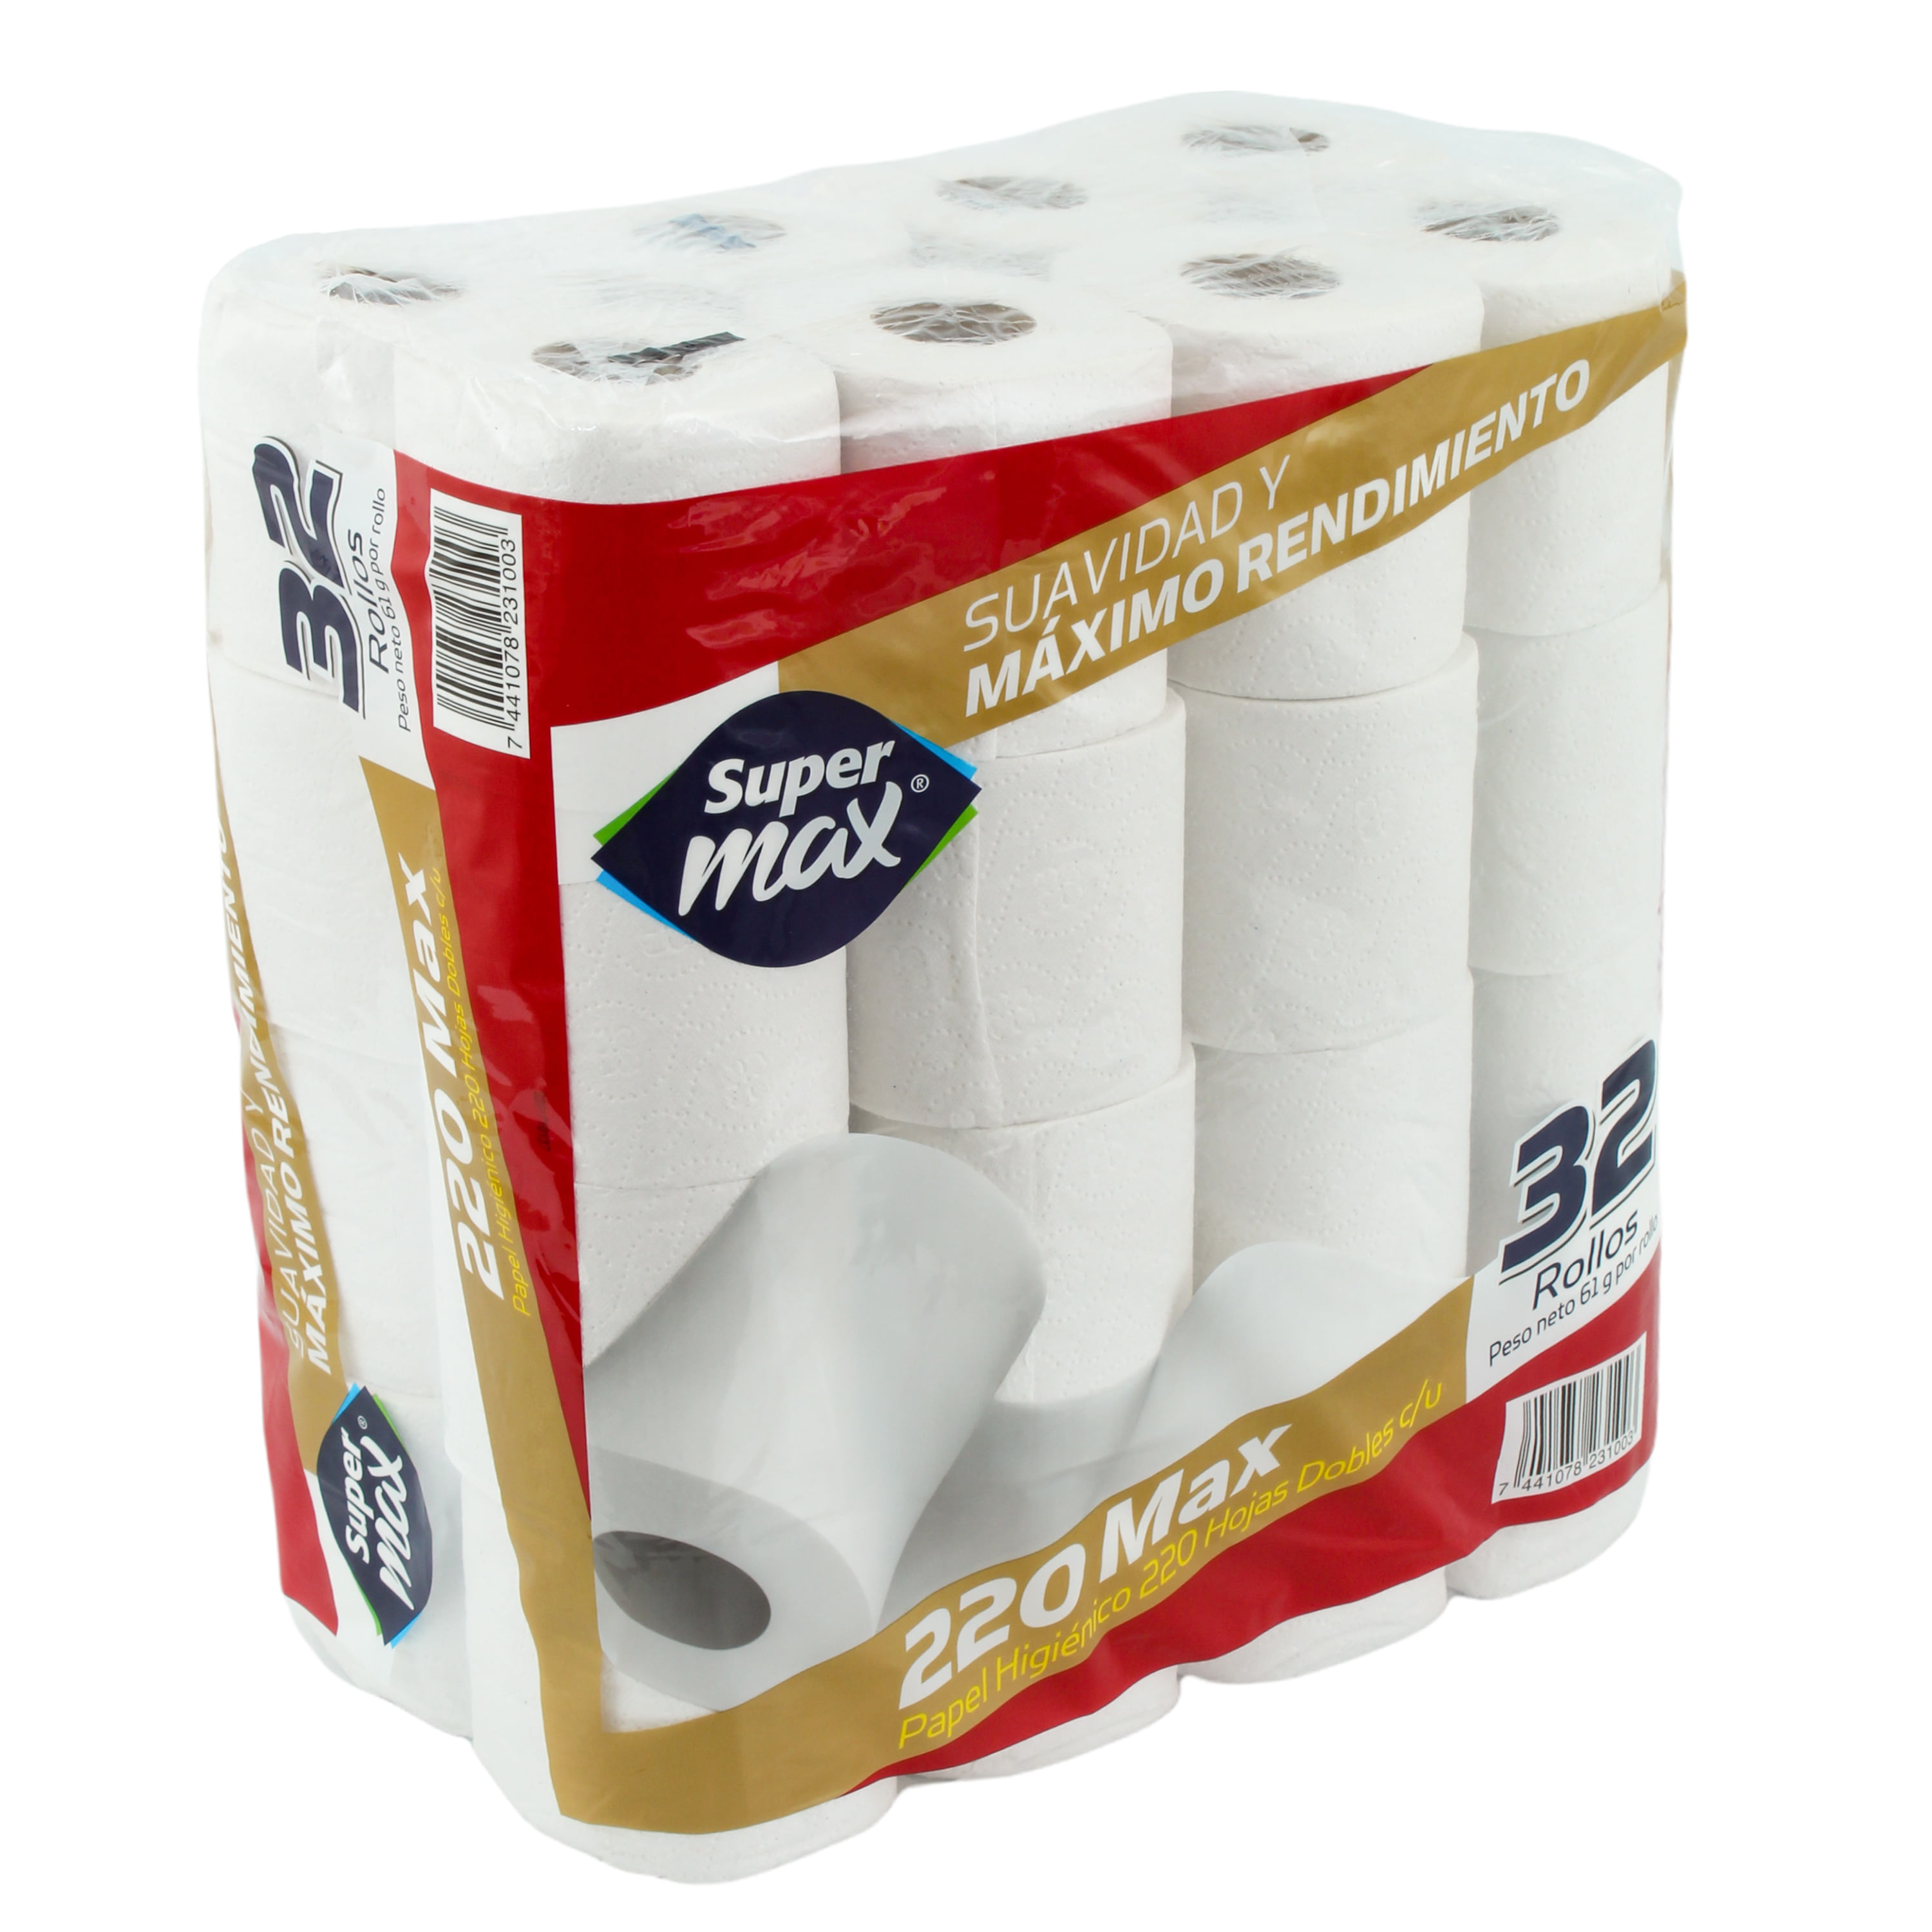 Comprar Papel Higienico Doble Hoja Supermax - Empaque Con 18 Rollos